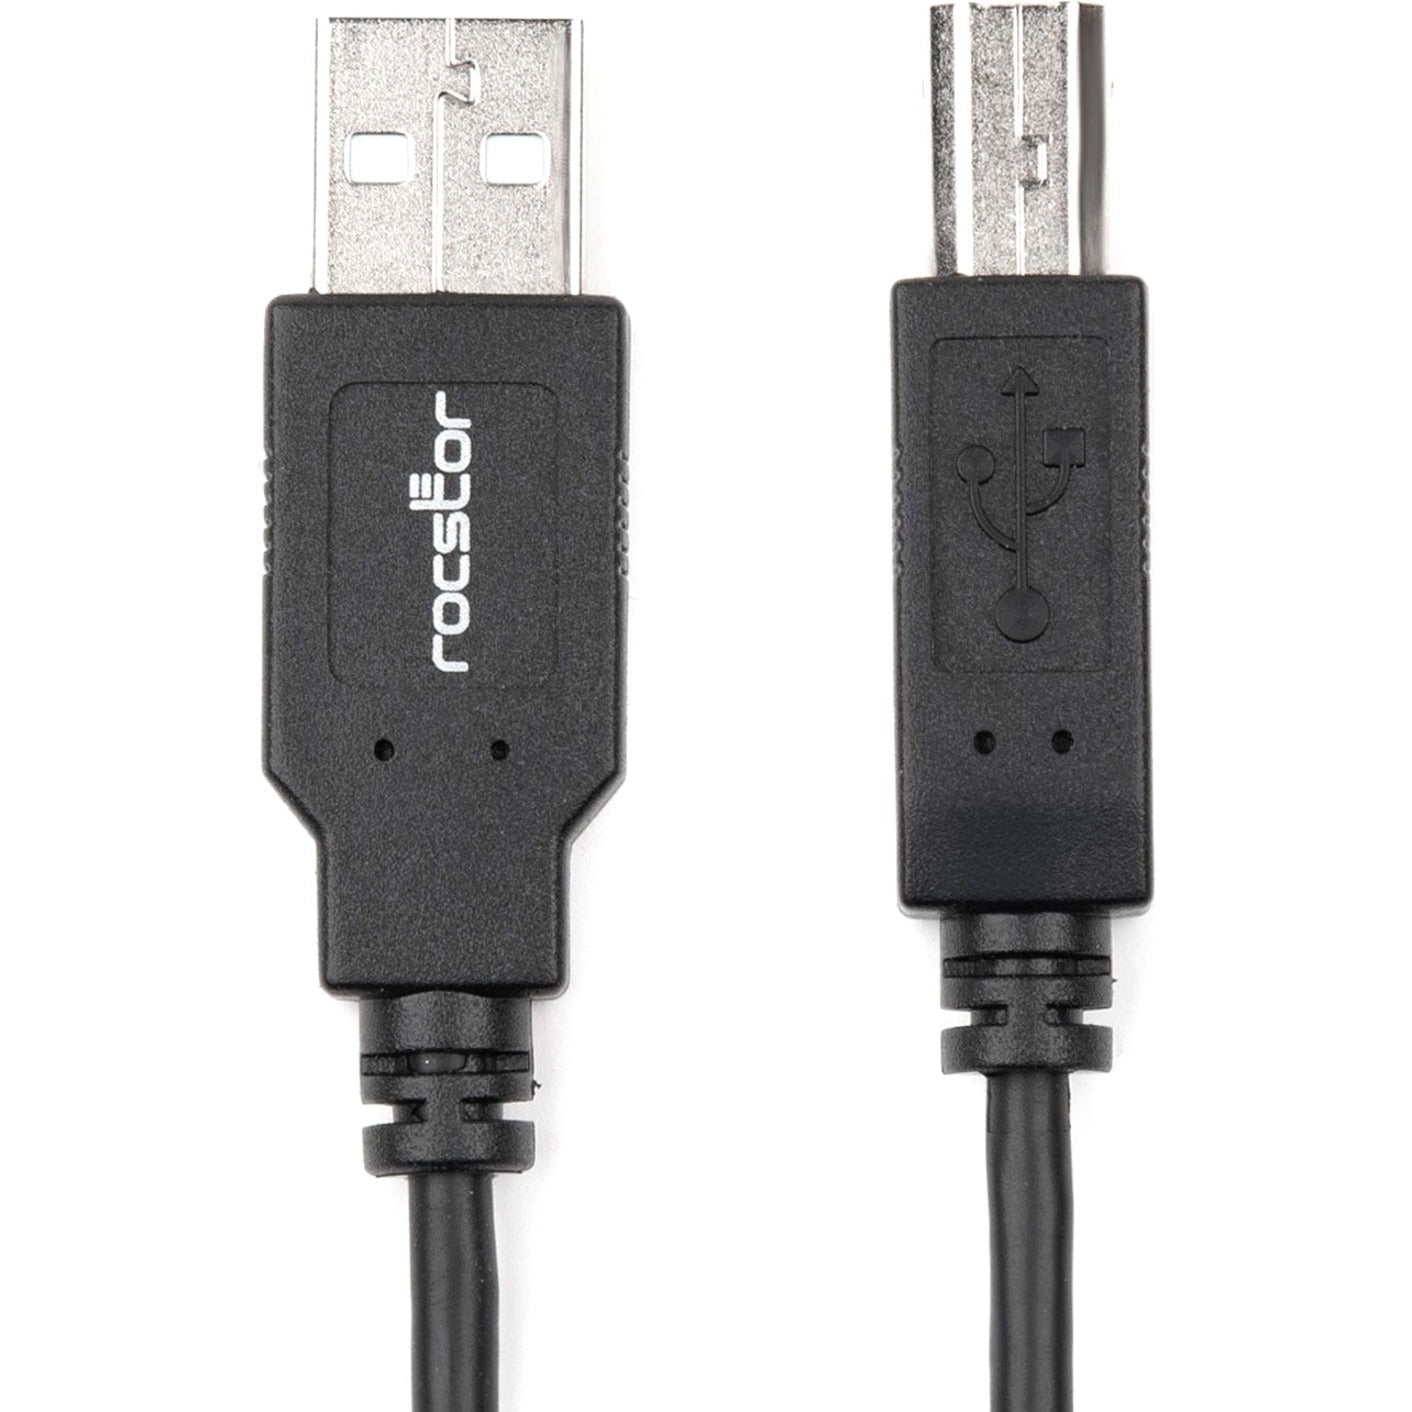 Rocstor Y10C115-B1 Premium 10 ft USB 2.0 Type-A to Type-B Cable - M/M Data Transfer Cable Rocstor Y10C115-B1 Câble Premium USB 2.0 de 10 pieds de Type-A à Type-B - M/M Câble de Transfert de Données